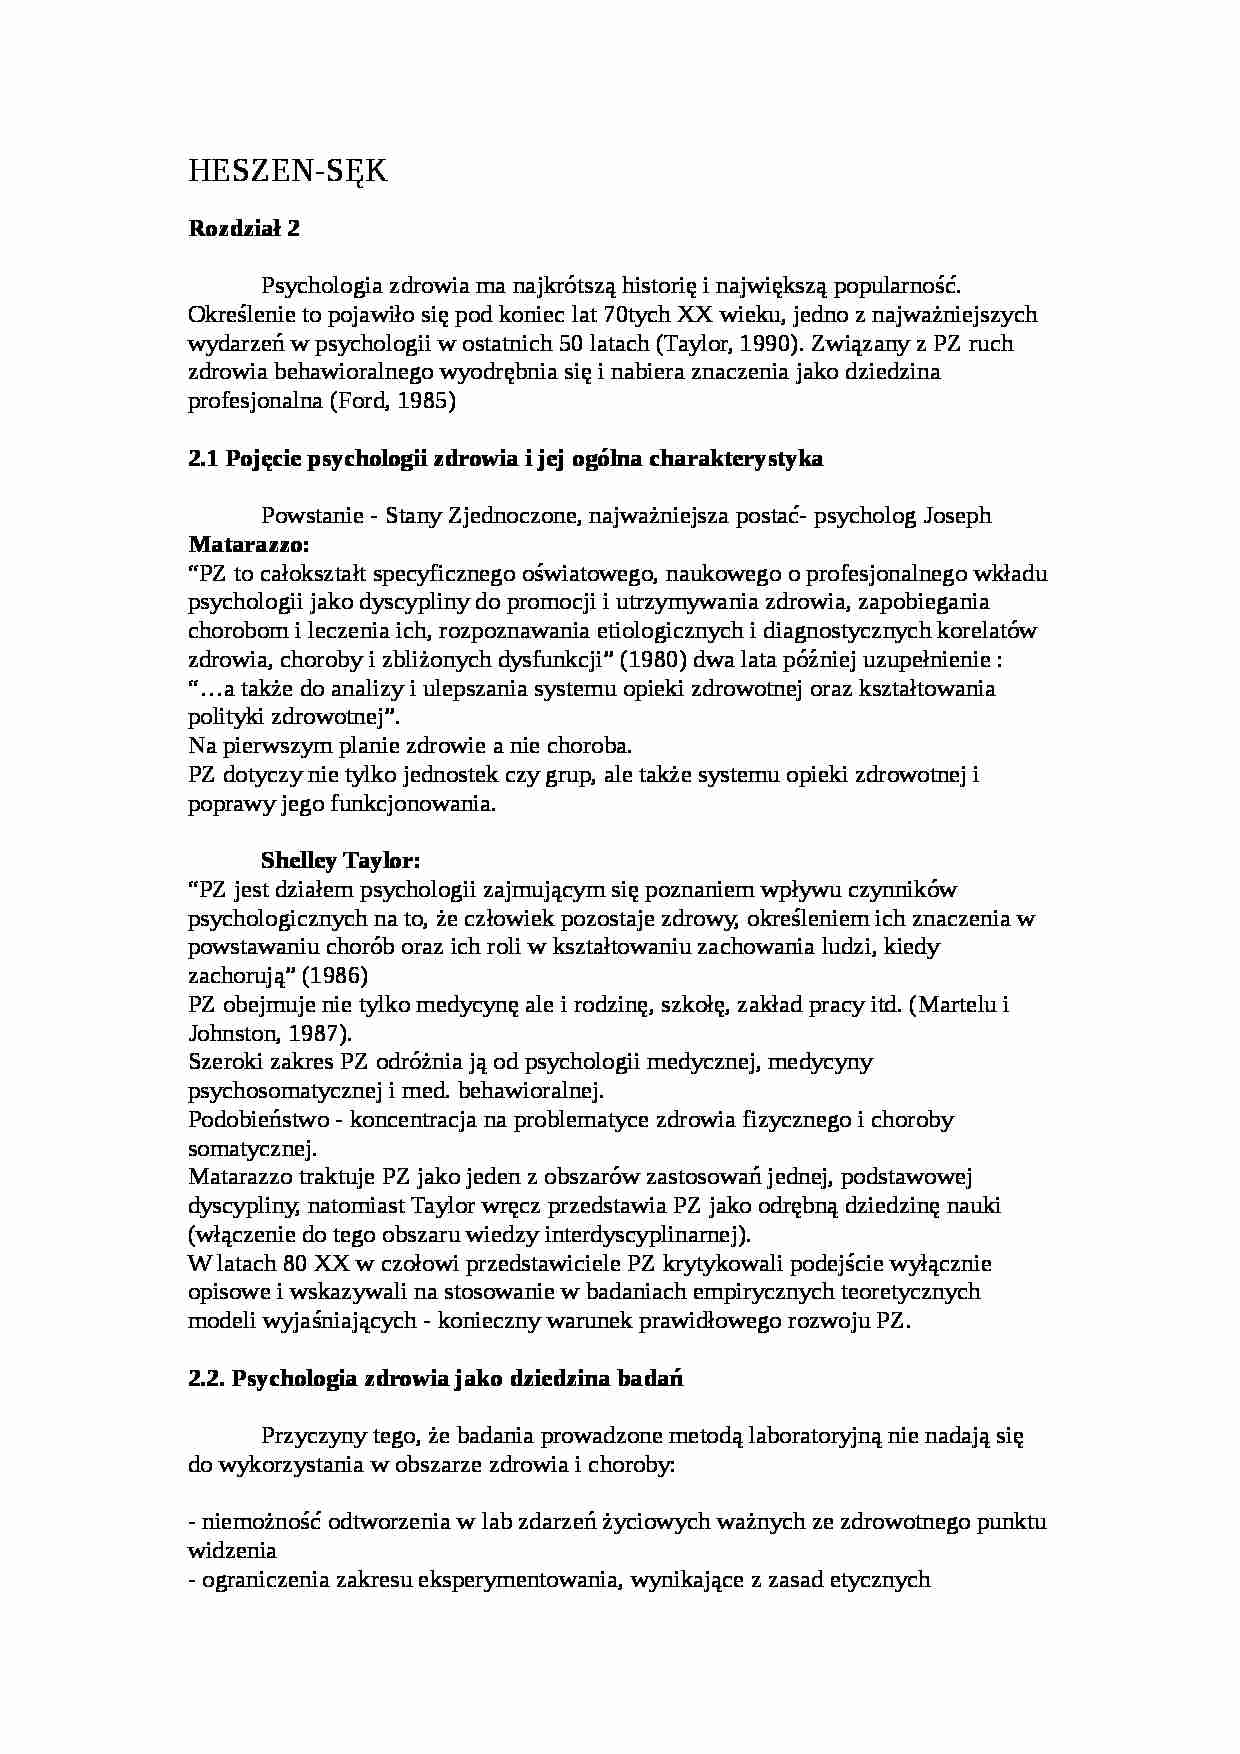 Elementy psychologii zdrowia-Heszen-Sęk - strona 1